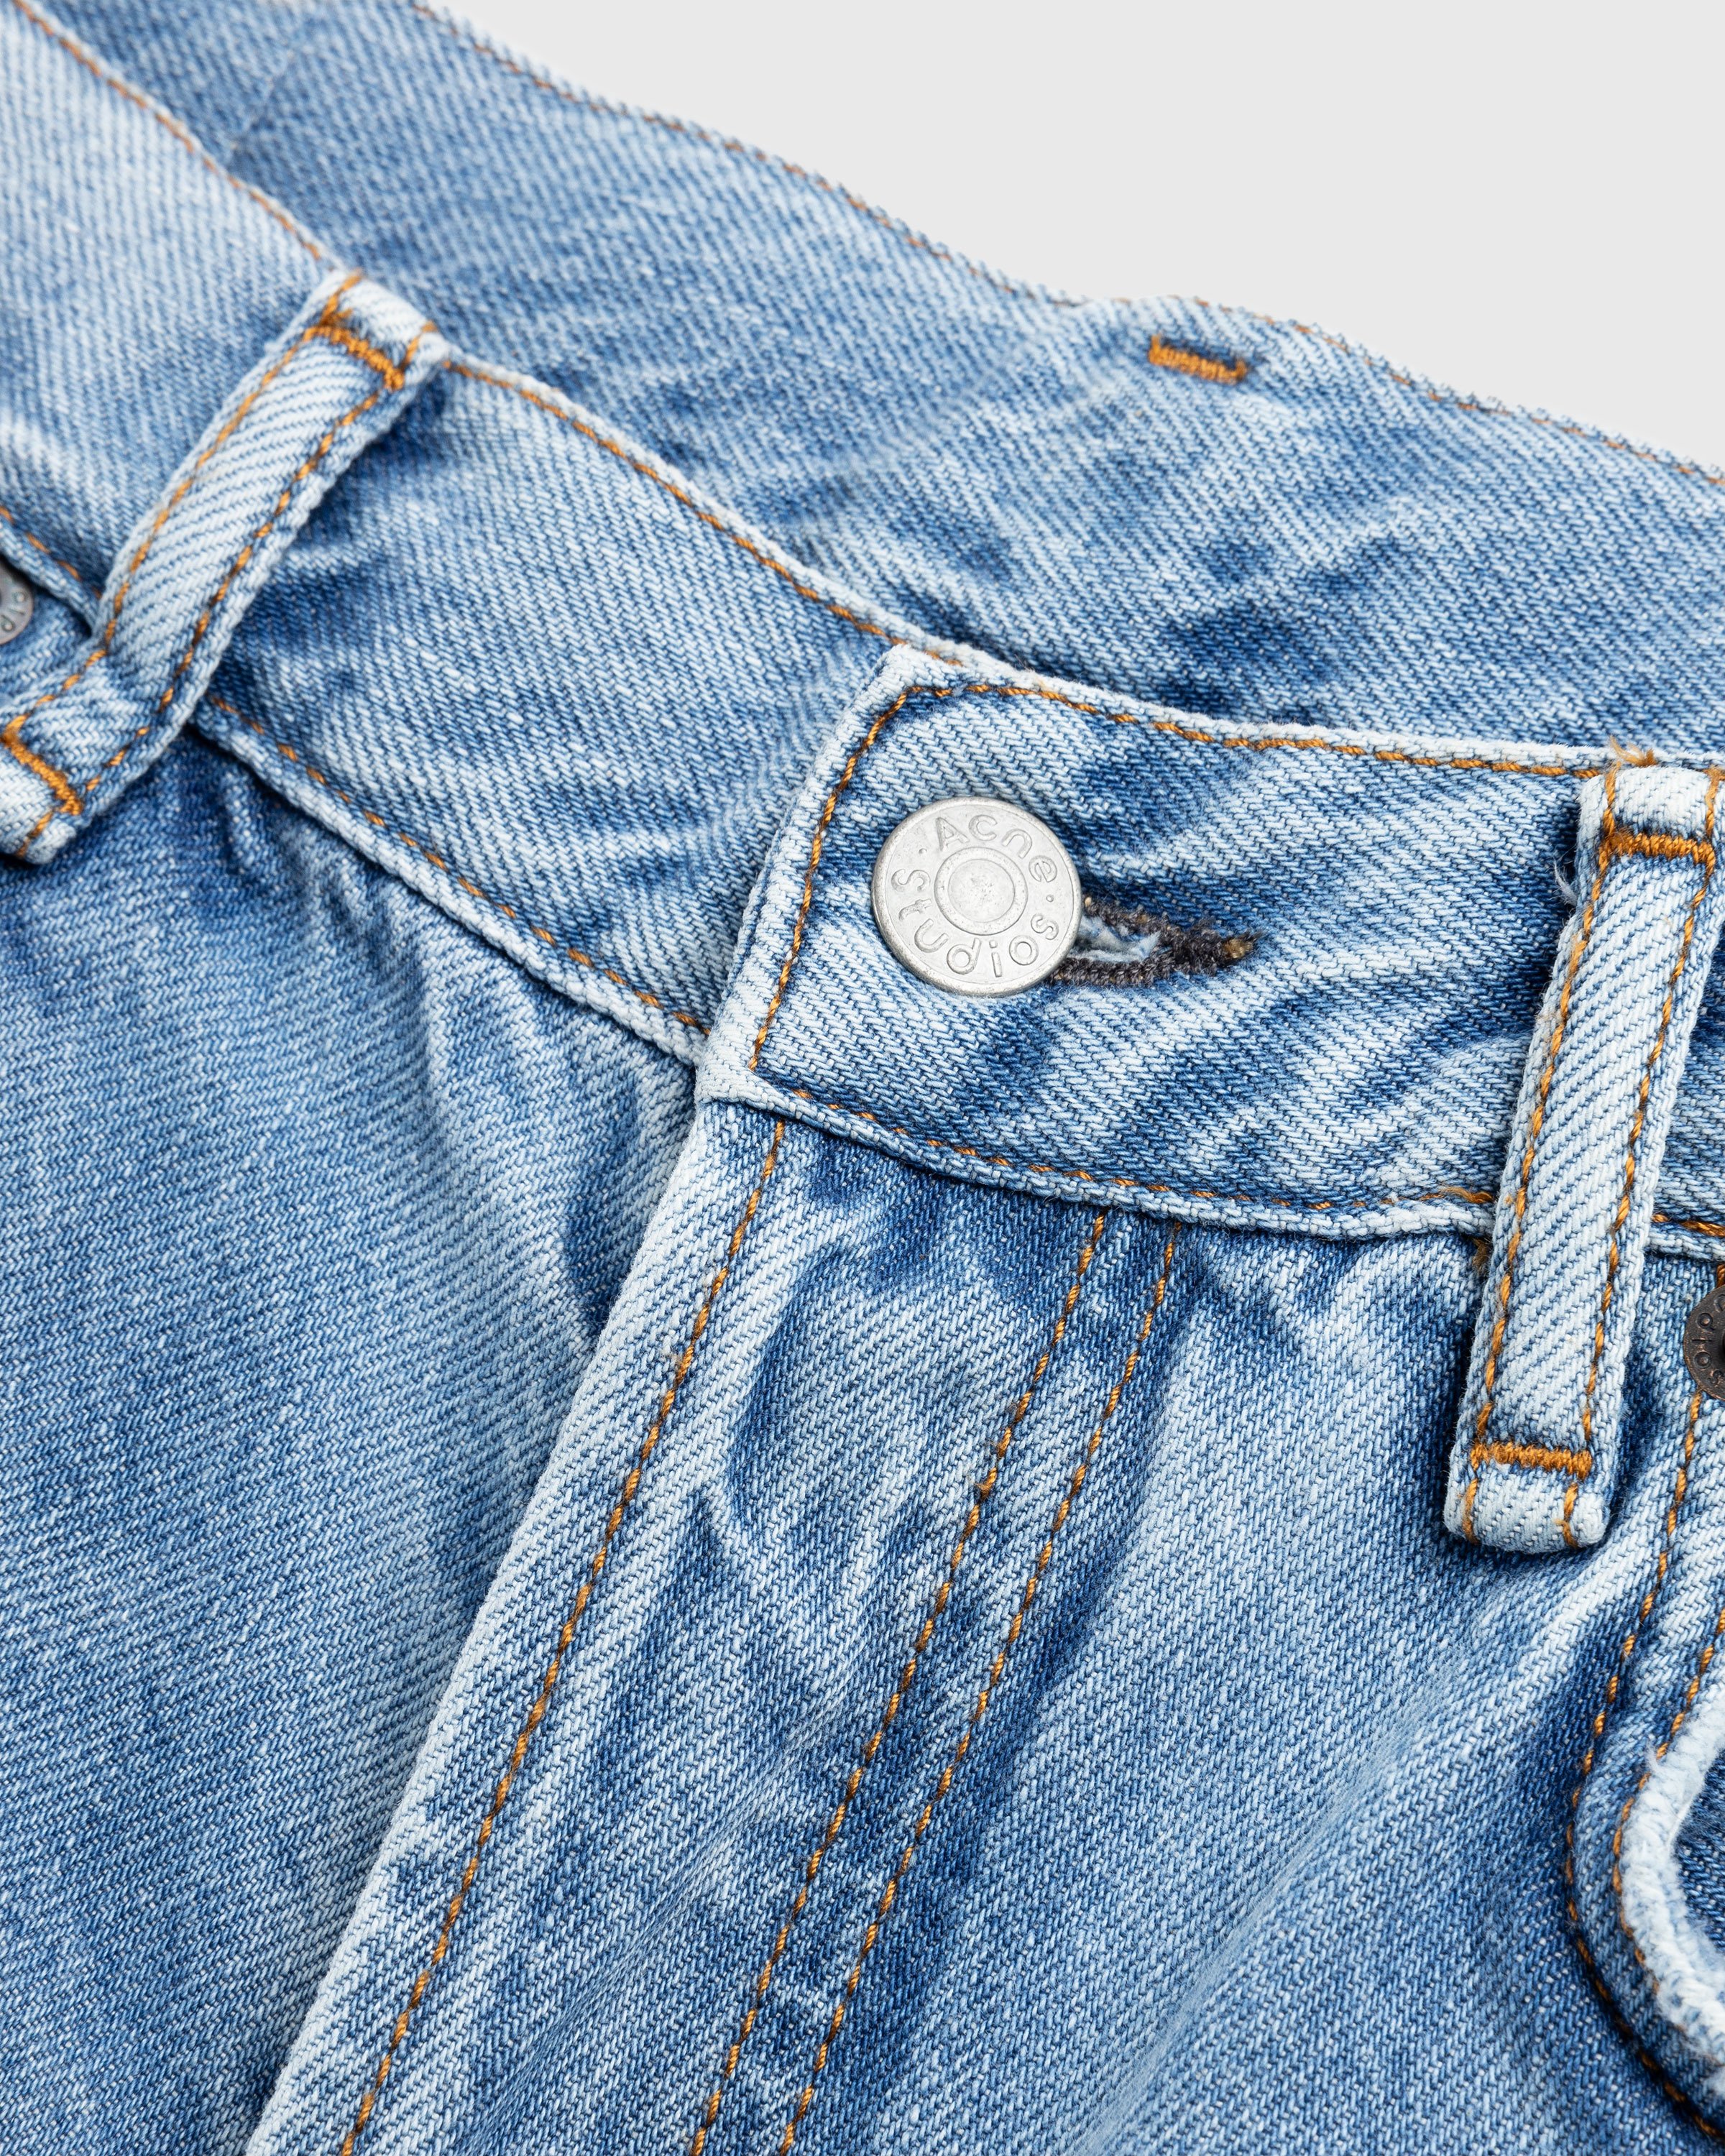 Acne Studios - Regular Fit Jeans 1992 Light Blue Vintage - Clothing - Blue - Image 5